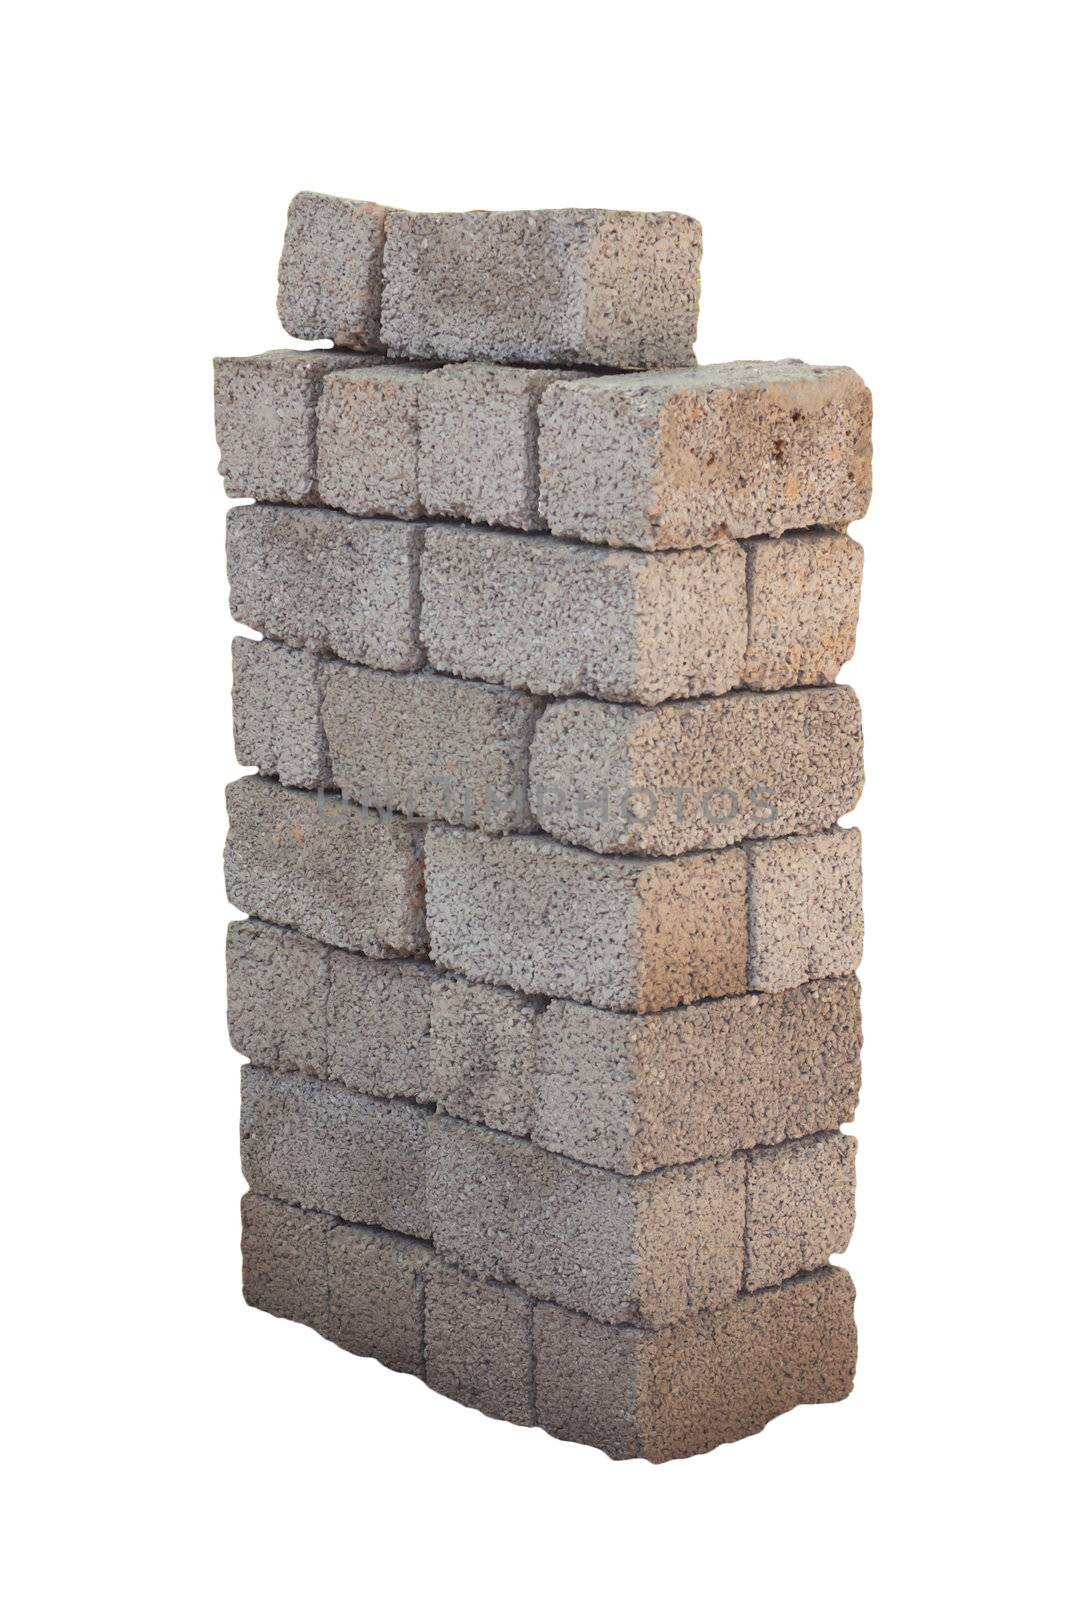 bricks by schankz